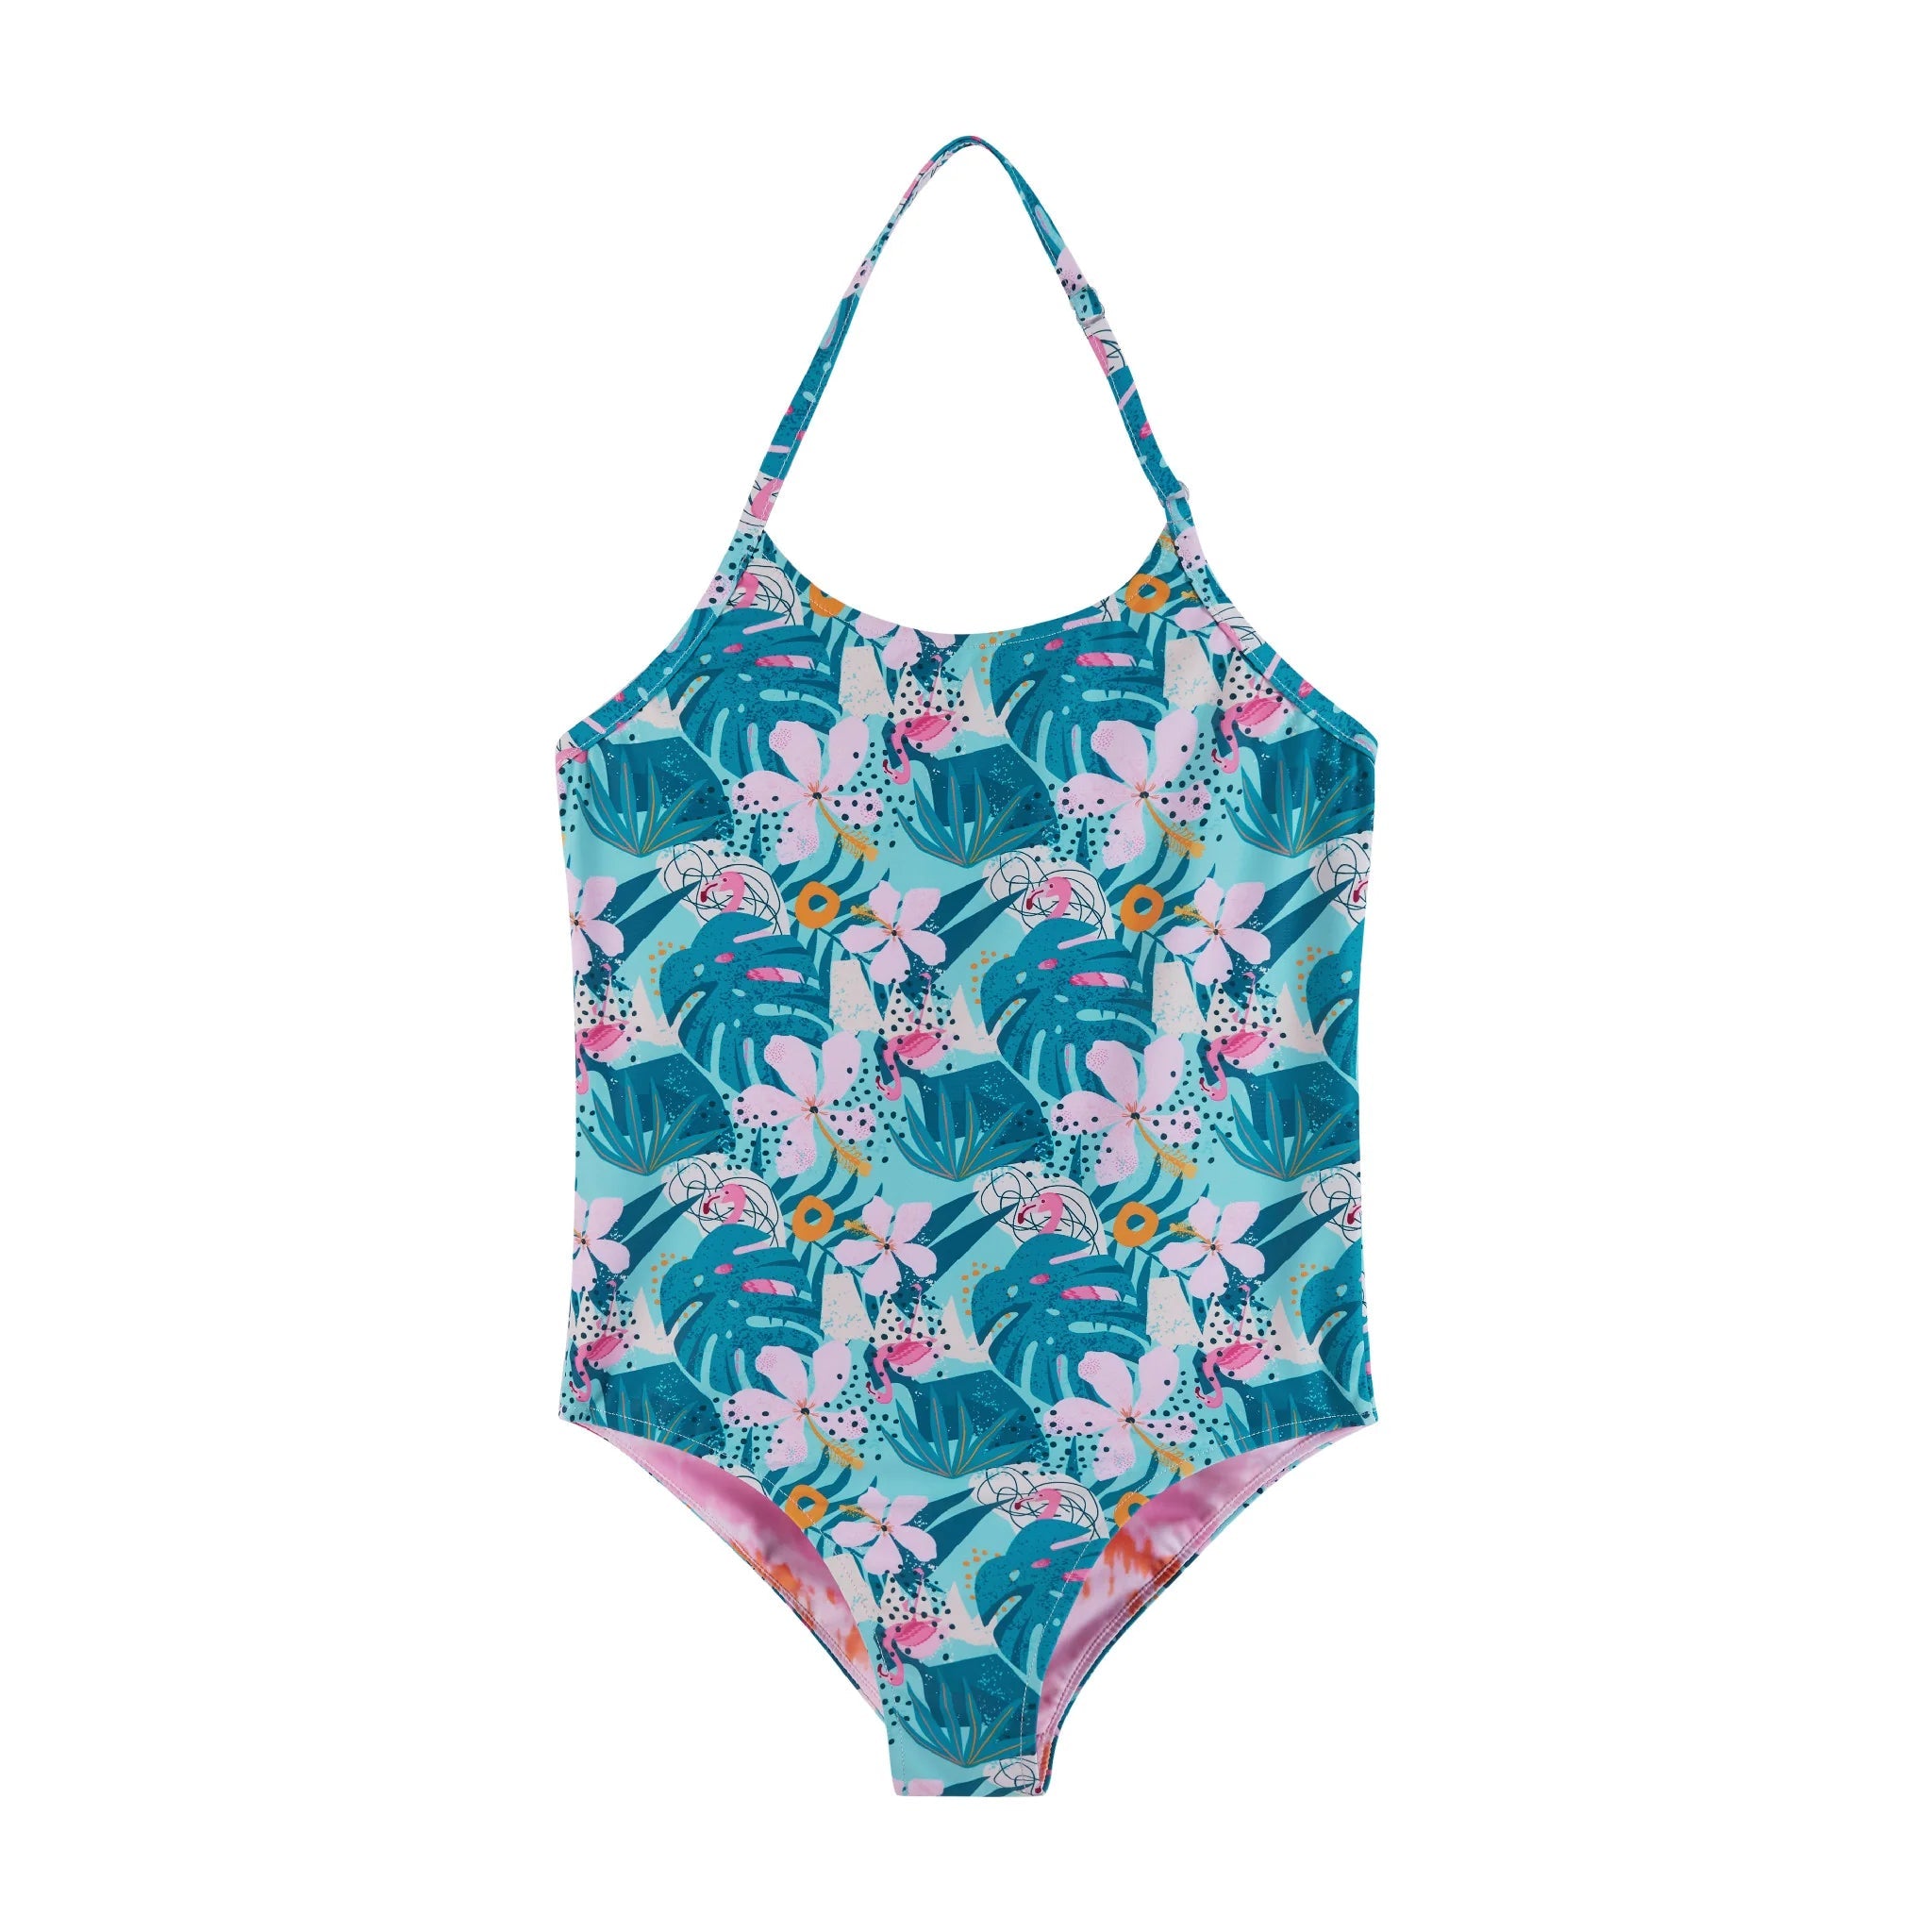 Andy & Evan Tween UPF 50+ Aqua & Tie Dye Reversible Swim Suit